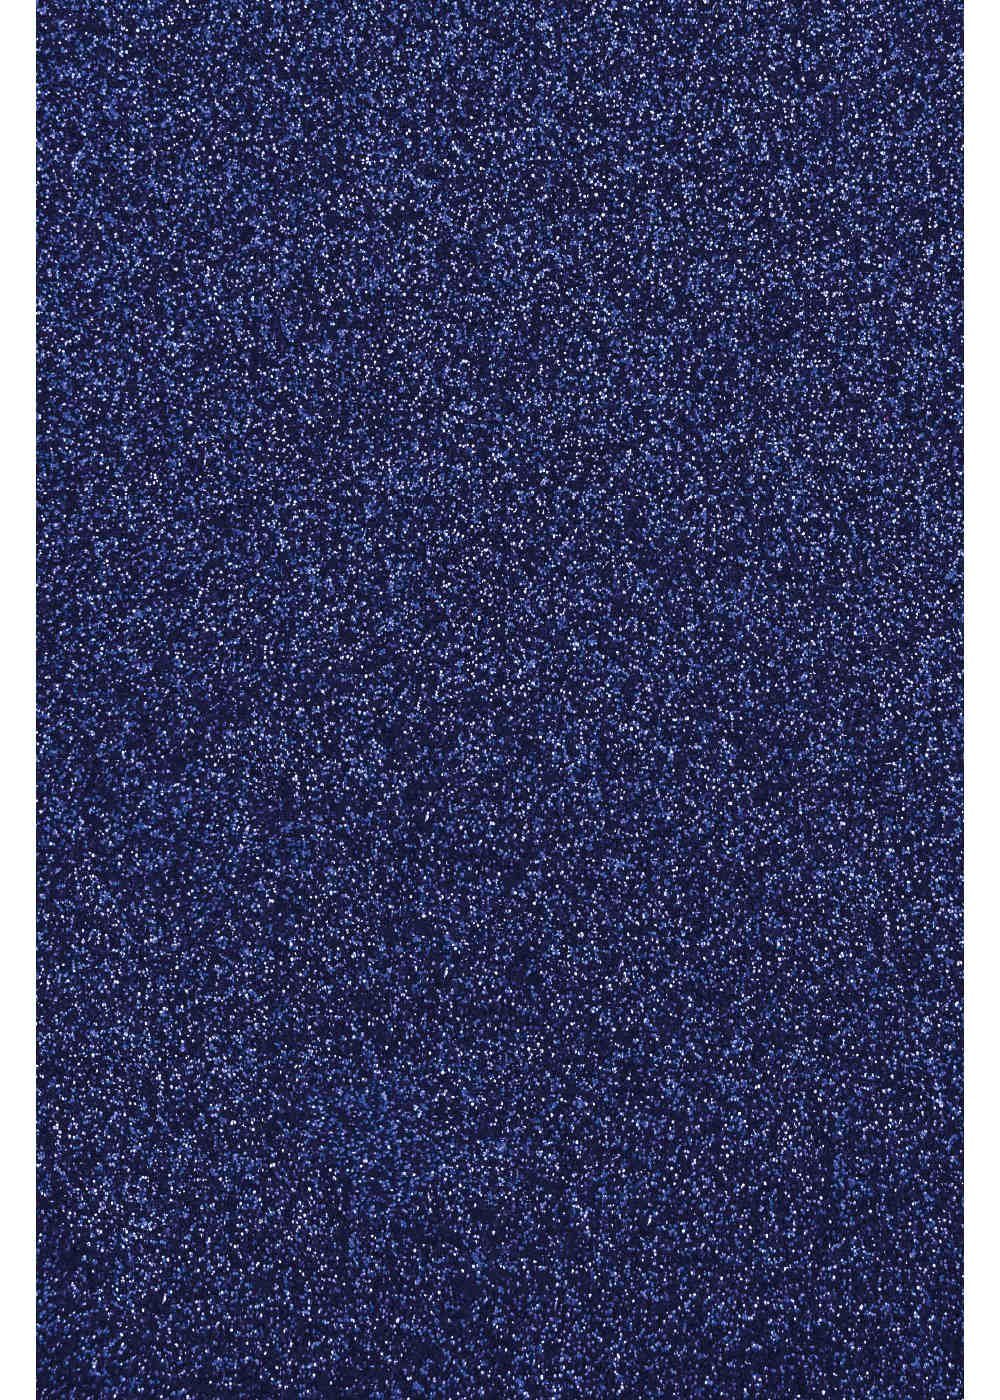 Hilltop Transparentpapier Glitzer Transferfolie/Textilfolie zum zum Royal Blue Aufbügeln, perfekt Plottern